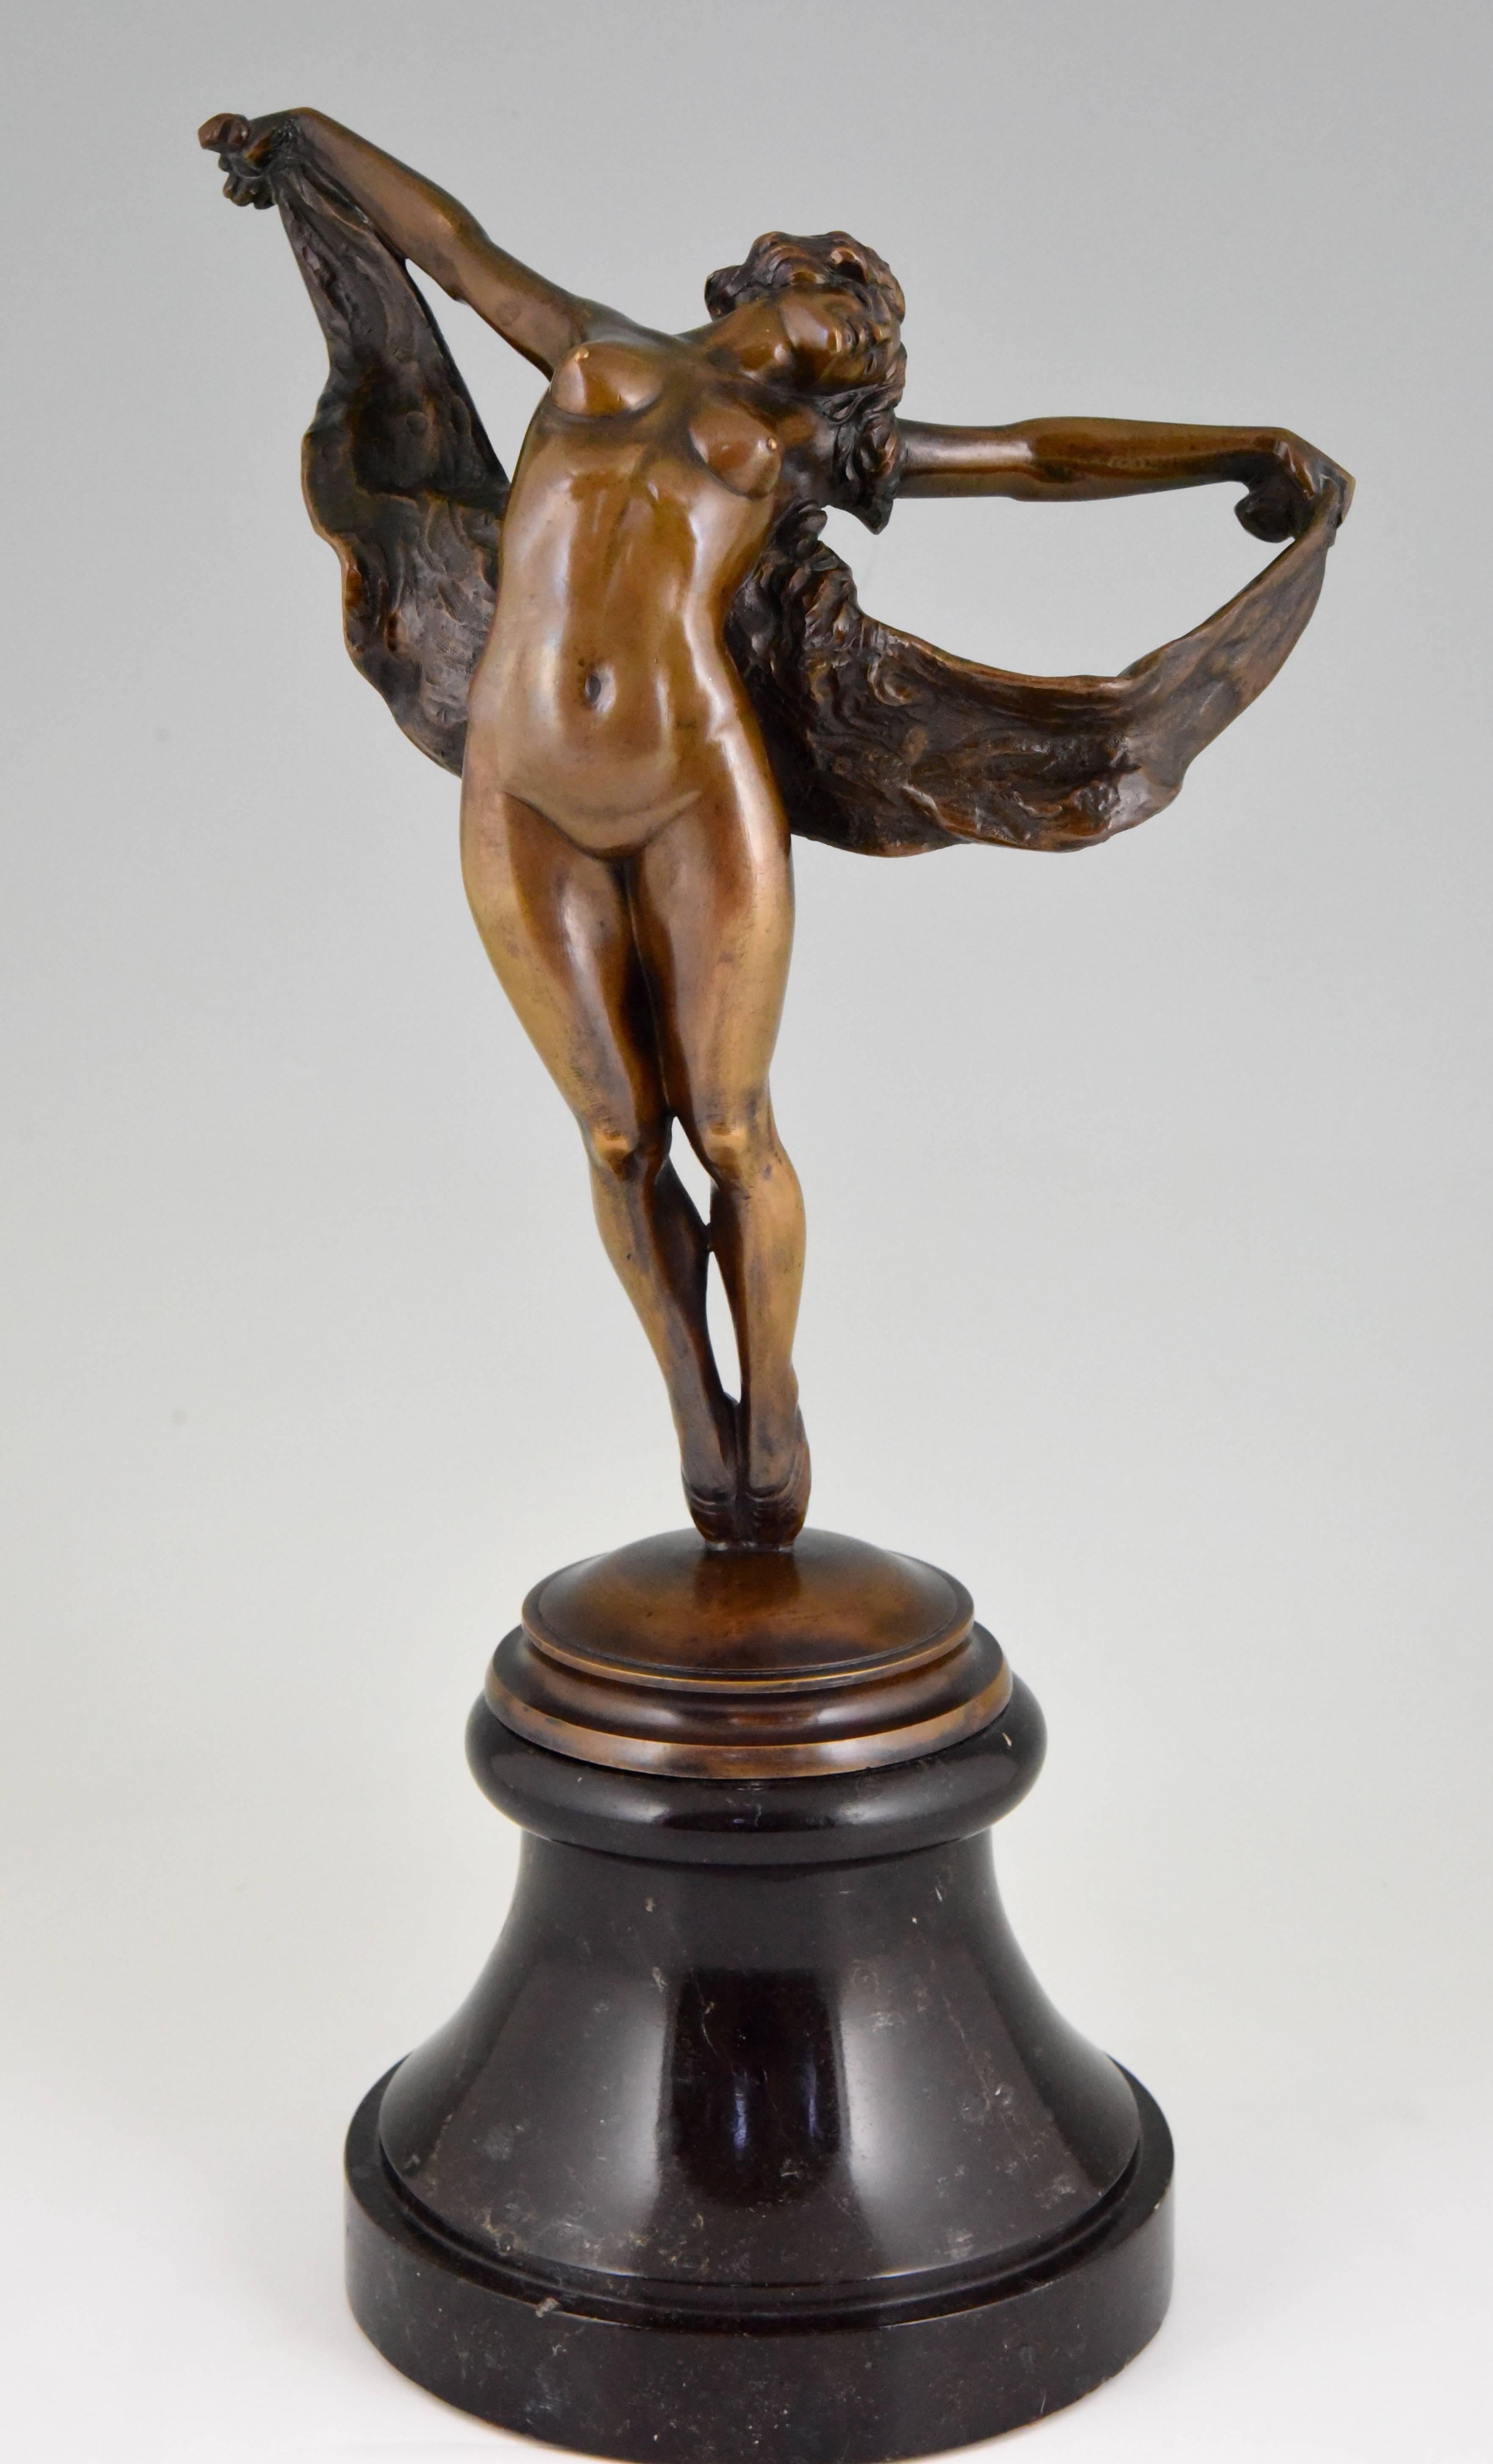 Art Nouveau bronze sculpture of a dancing nude.
Artist/ Maker: Joseph Zomers
Signature/ Marks: J. Zomers
Style: Art Nouveau.
Date: 1915
Material: Patinated bronze. ?Marble base.
Origin: Belgium
Size: H. 43.5 cm x L. 24 cm. x W. 17 cm. ? 
H.